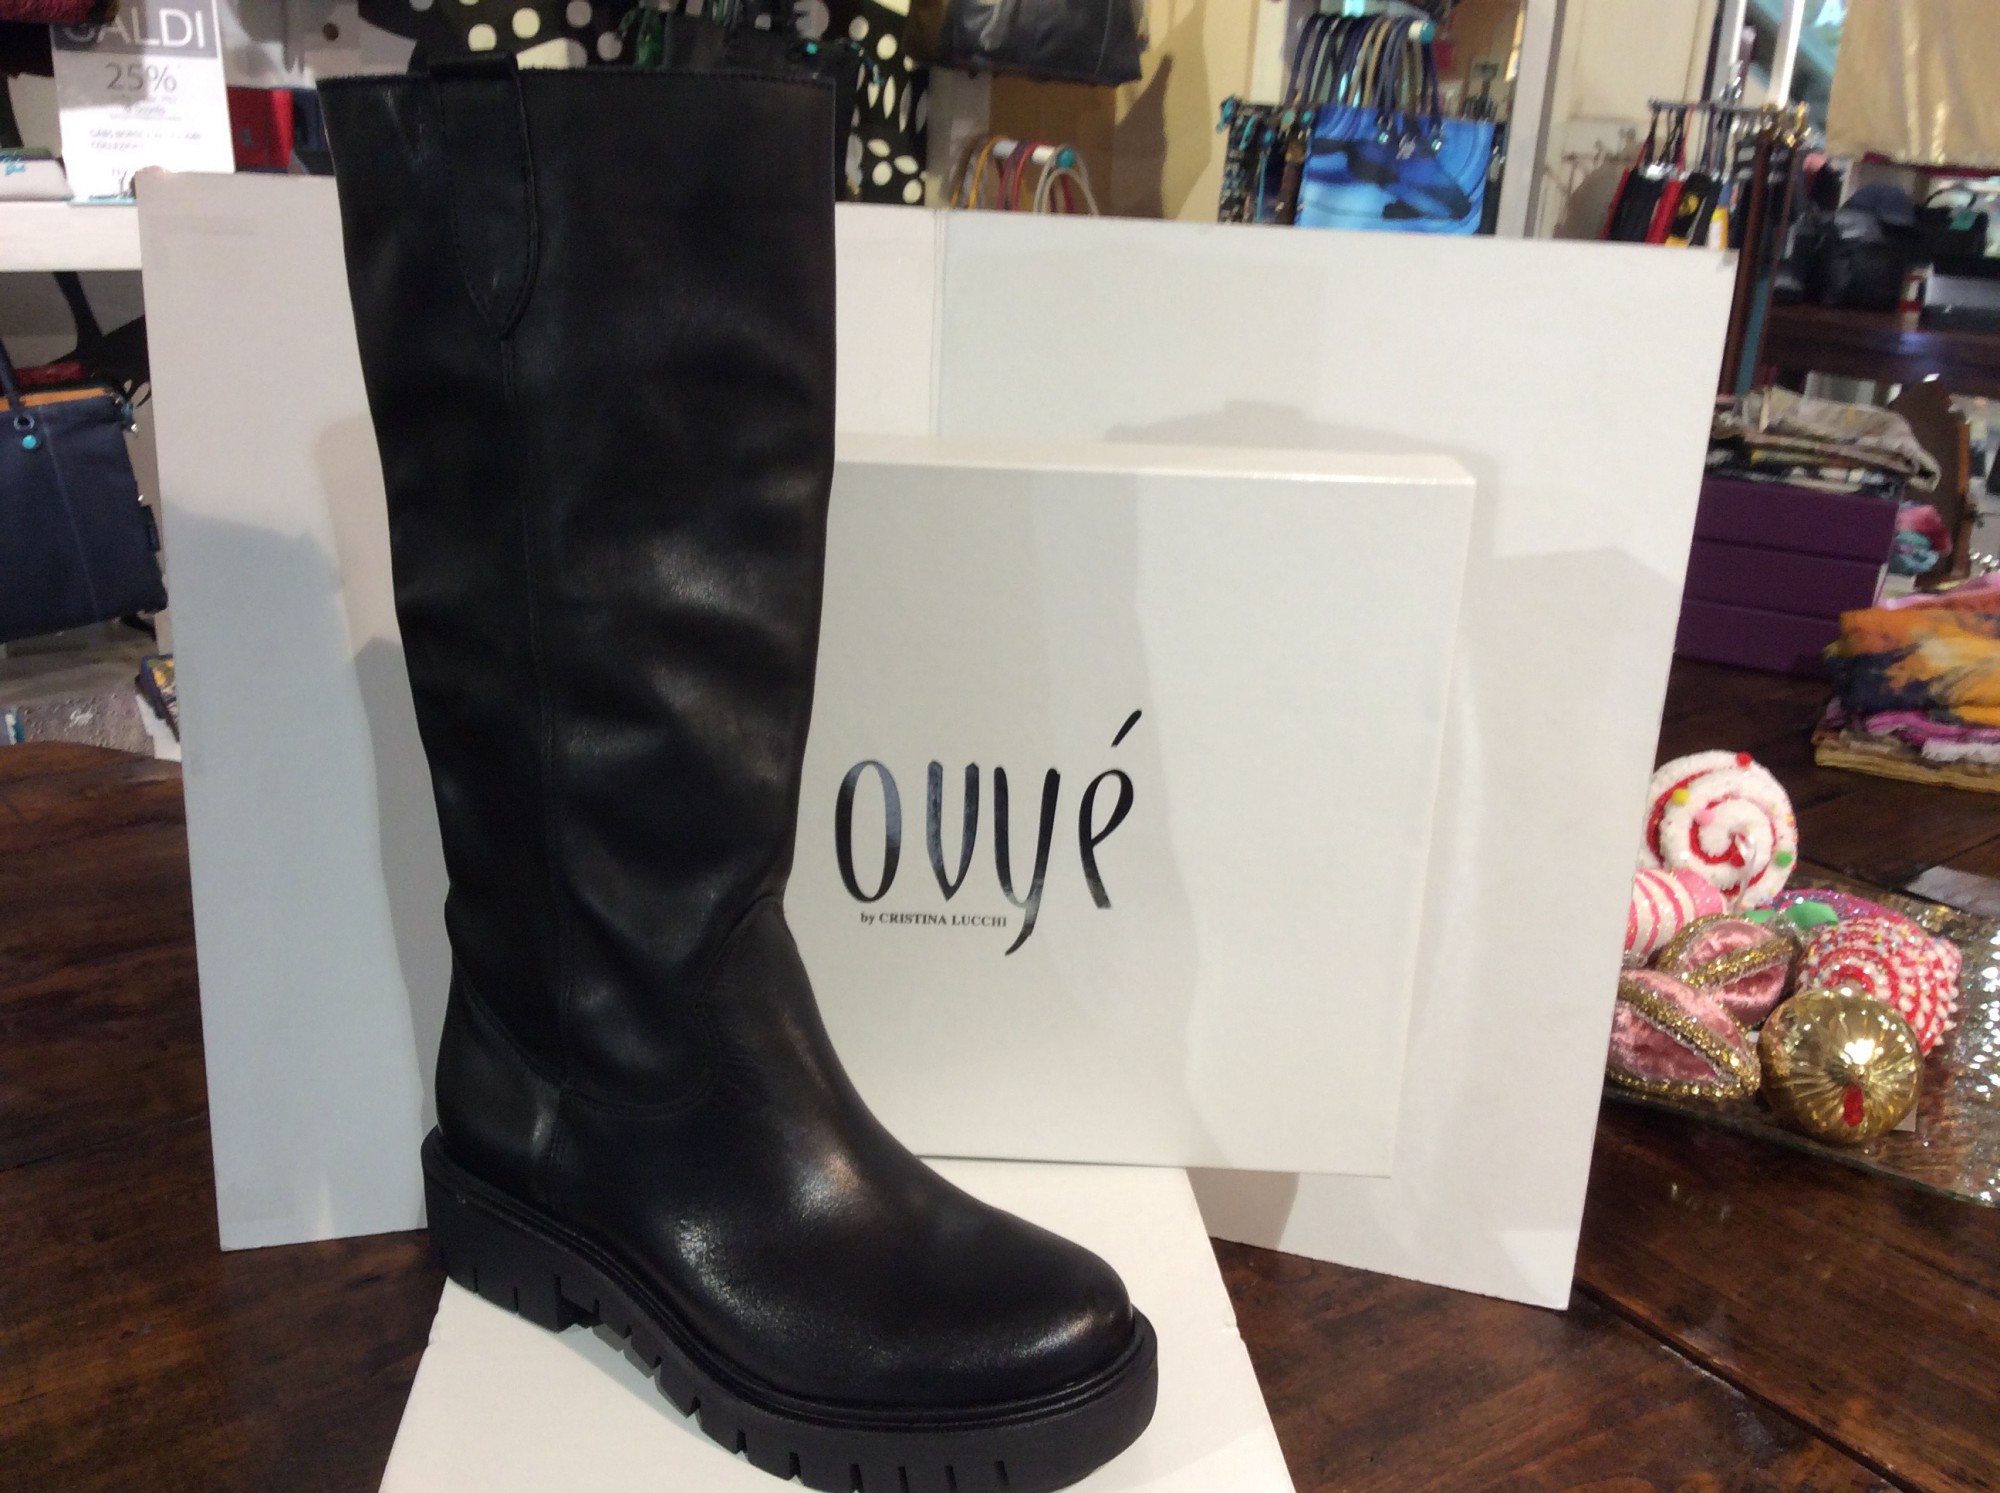 Vendita Ovye' scarpe - stivale donna mod. ef2342, vendita online Ovye'  scarpe - stivale donna mod. ef2342 | Tempus Doni